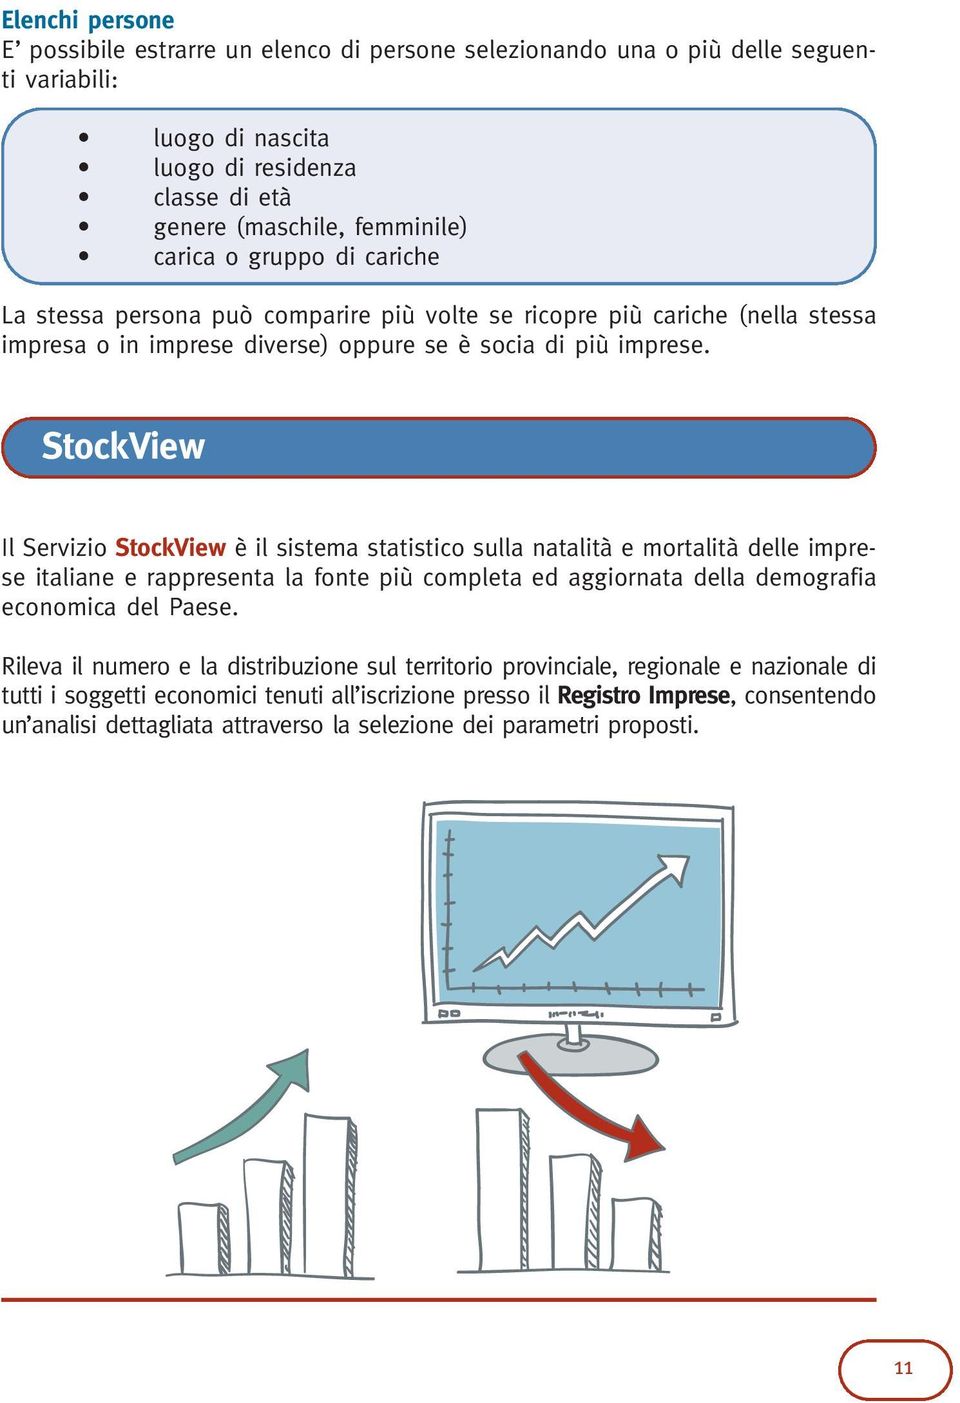 StockView Il Servizio StockView è il sistema statistico sulla natalità e mortalità delle imprese italiane e rappresenta la fonte più completa ed aggiornata della demografia economica del Paese.